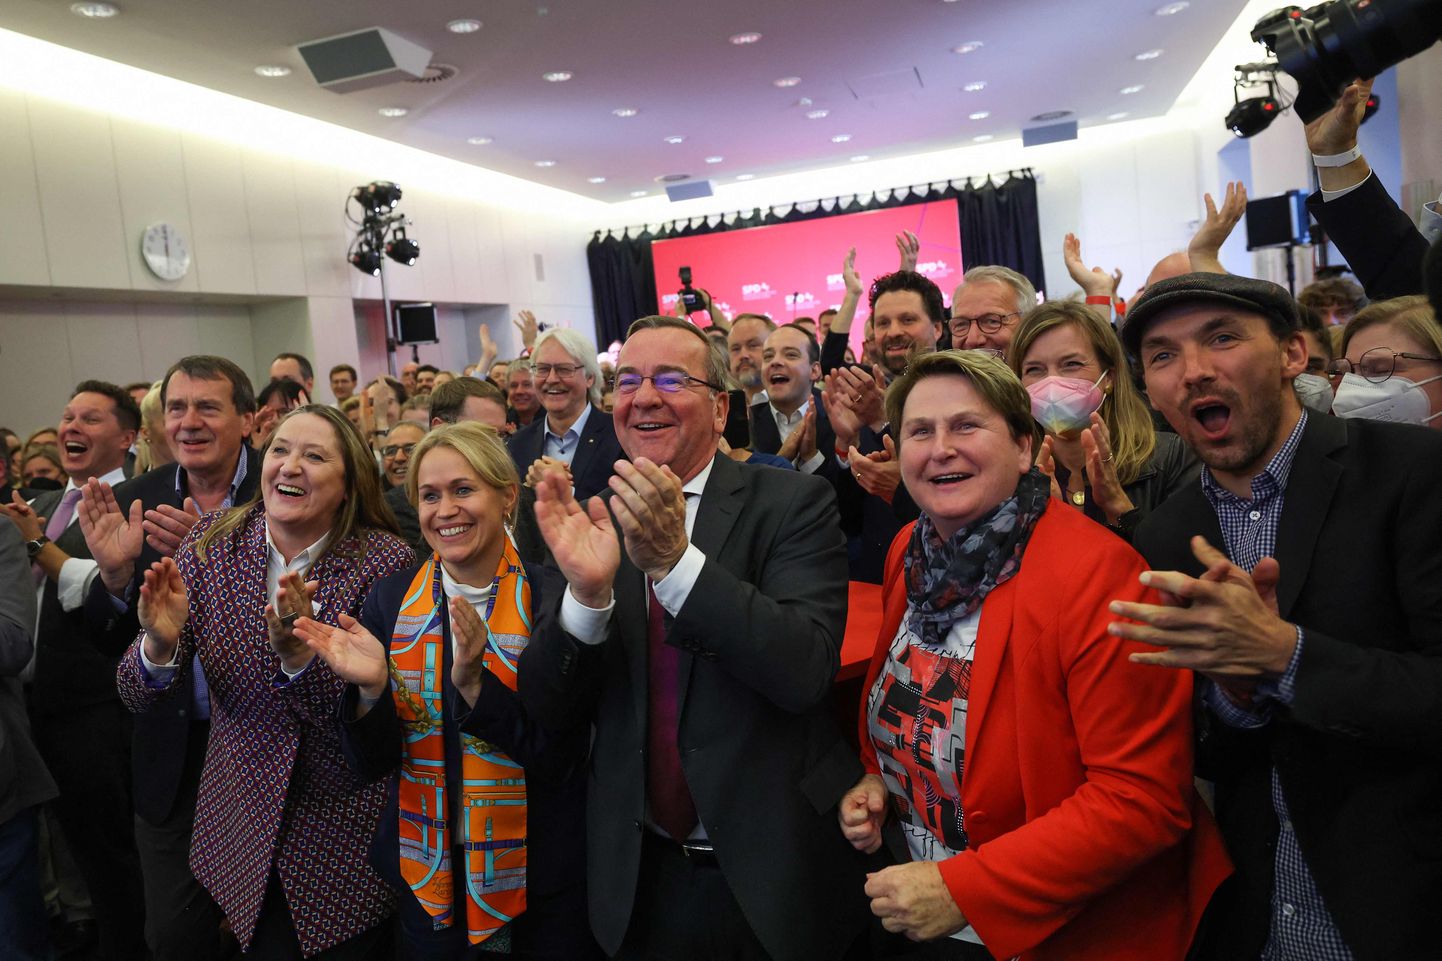 Alam-Saksi liidumaa Sotsiaaldemokraatlikusse Parteisse (SPD) kuuluv siseminister Boris Pistorius (keskel) koos oma toetajatega reageerivad ringhäälingukanali ZDF avaldatud lävepakuküsitluse tulemustele liidumaa pealinnas Hannoveris asuvas parlamendihoones.